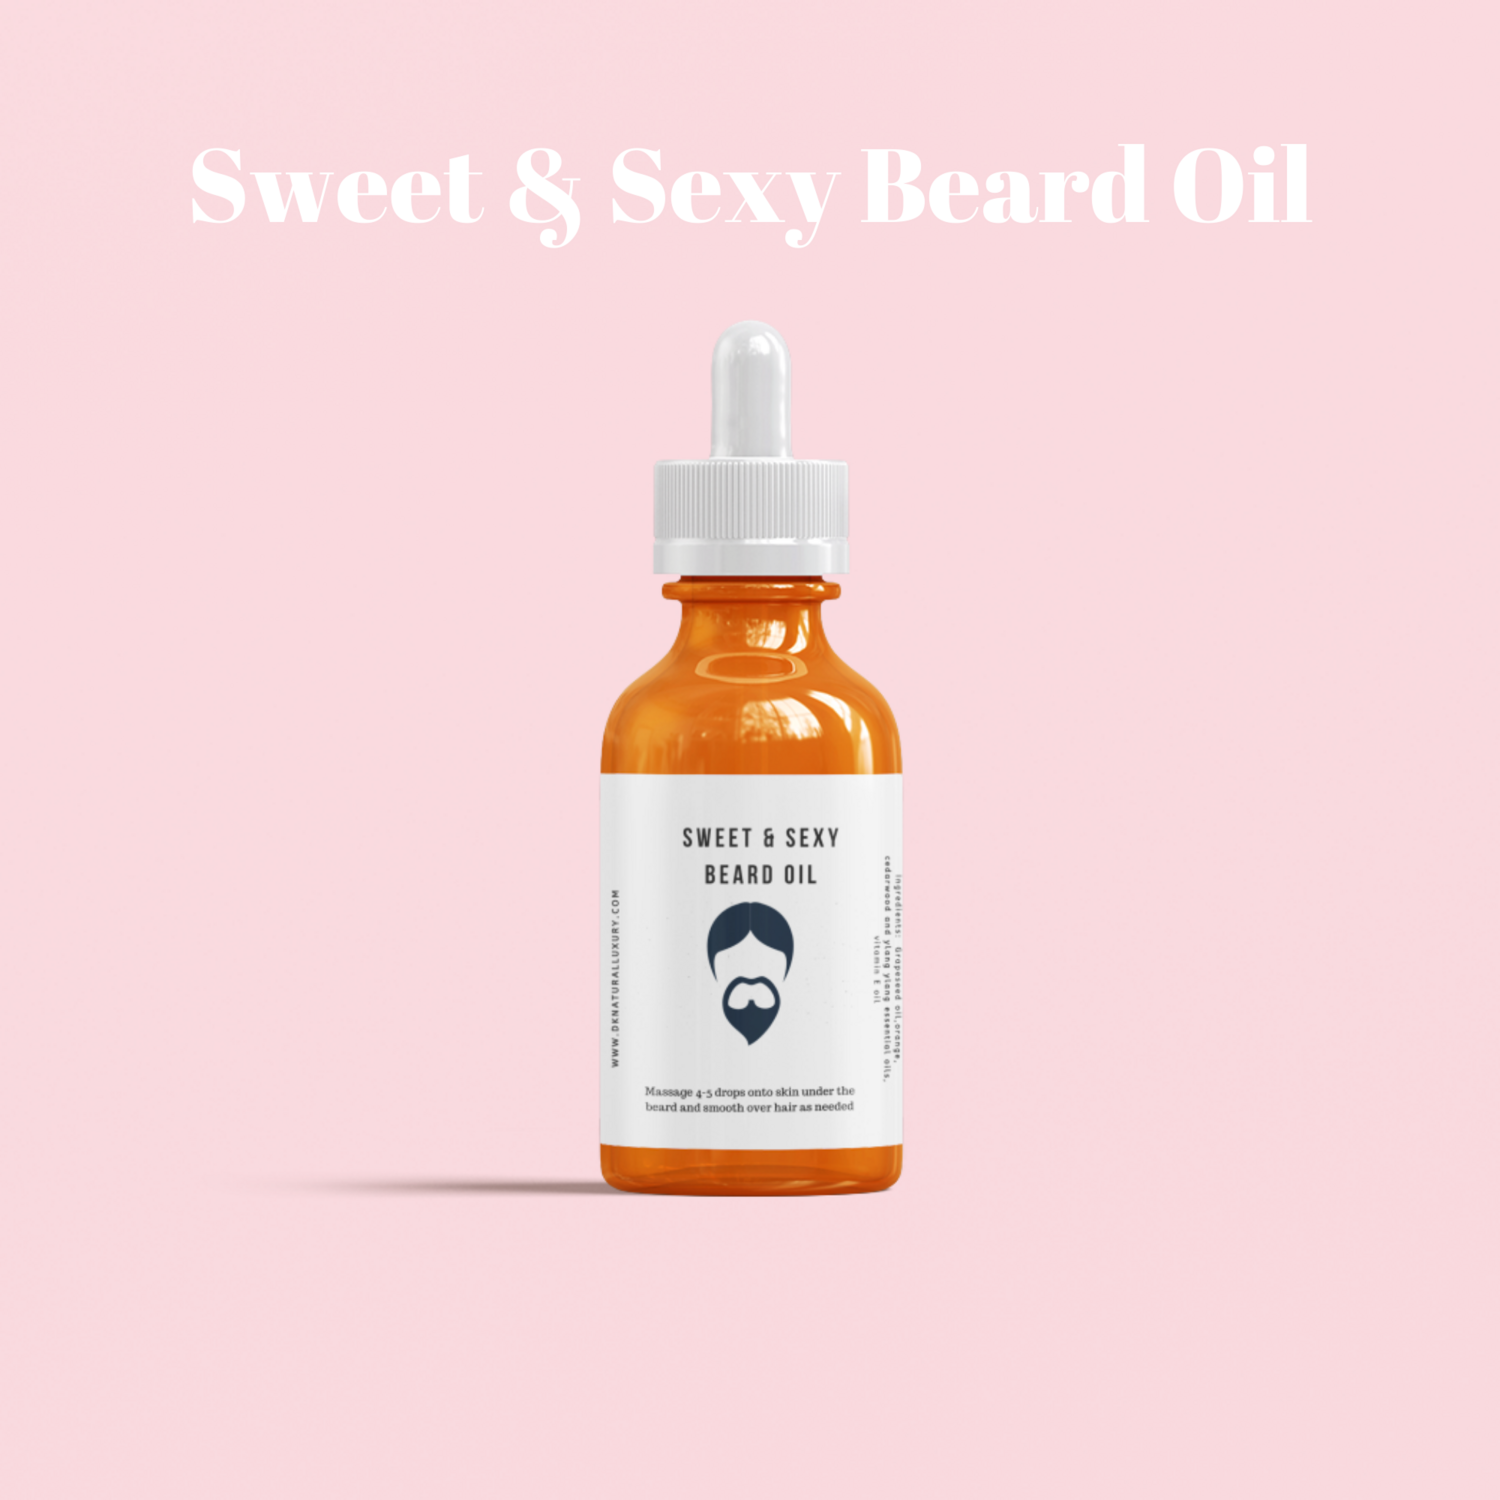 Sweet & Sexy Beard Oil